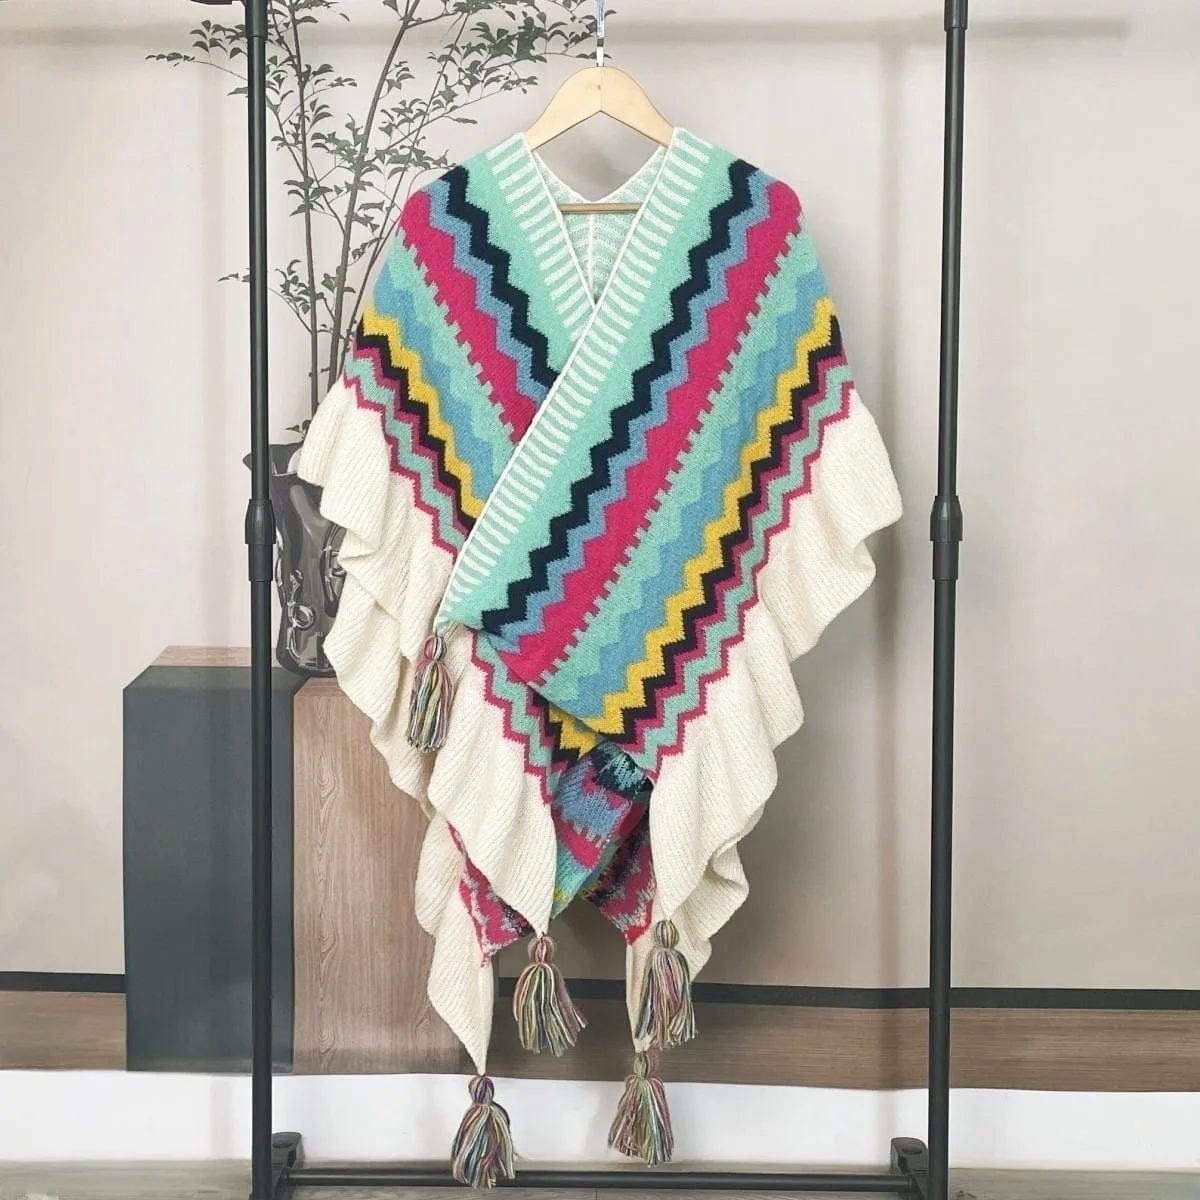 Women Ethnic Style Poncho Capes Ladies Fashion Stripe Colorful Knit Oversized Poncho Wrap Fringed Shawl Bohemian